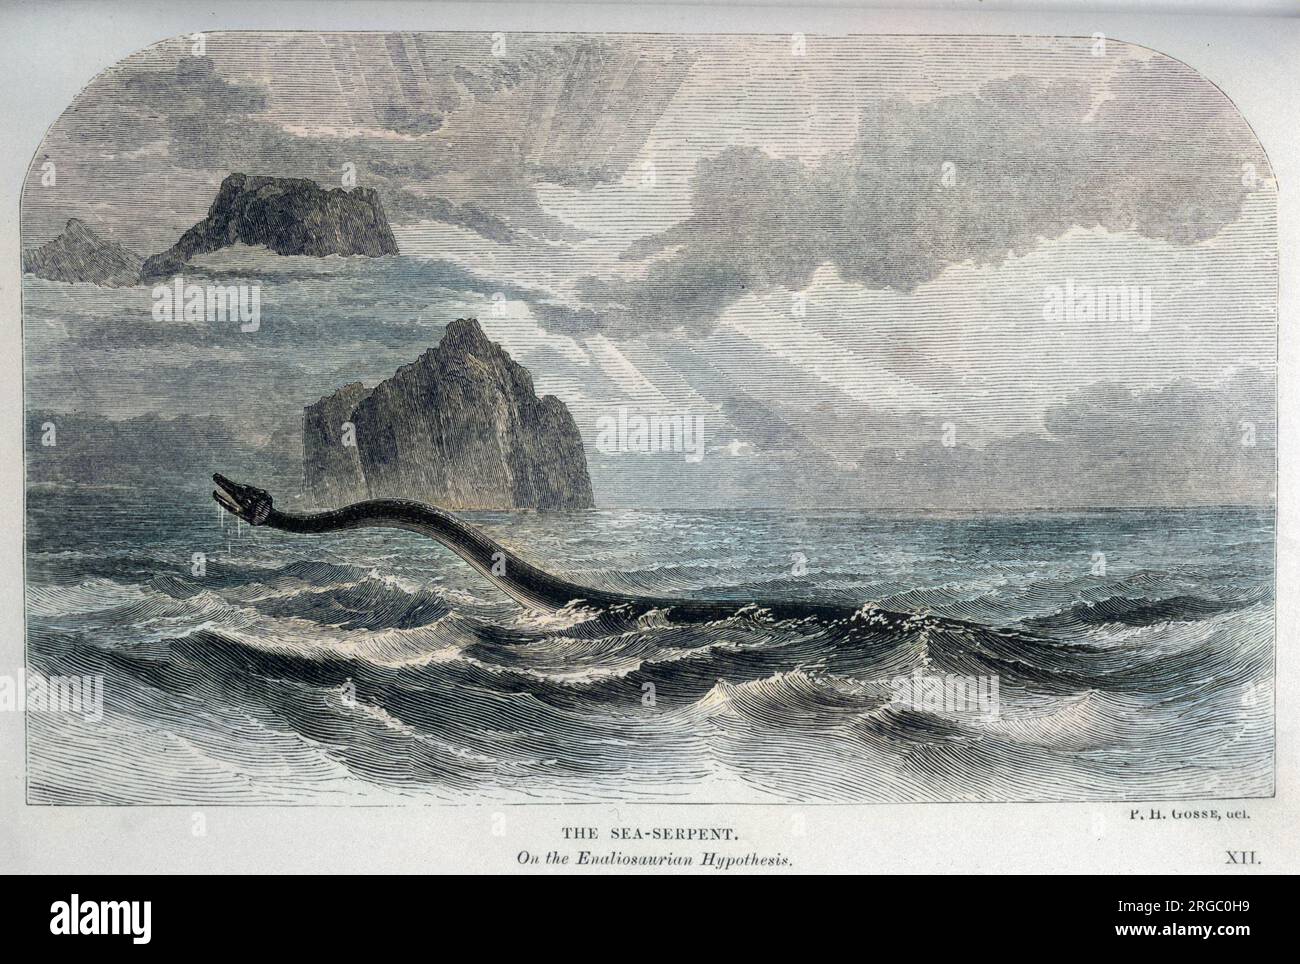 Der Naturforscher Philip Henry Gosse meint, die Berichte über "Seeschlangen" könnten sich auf einen Enaliosaurier beziehen, ein angeblich ausgestorbenes Meereswesen Stockfoto